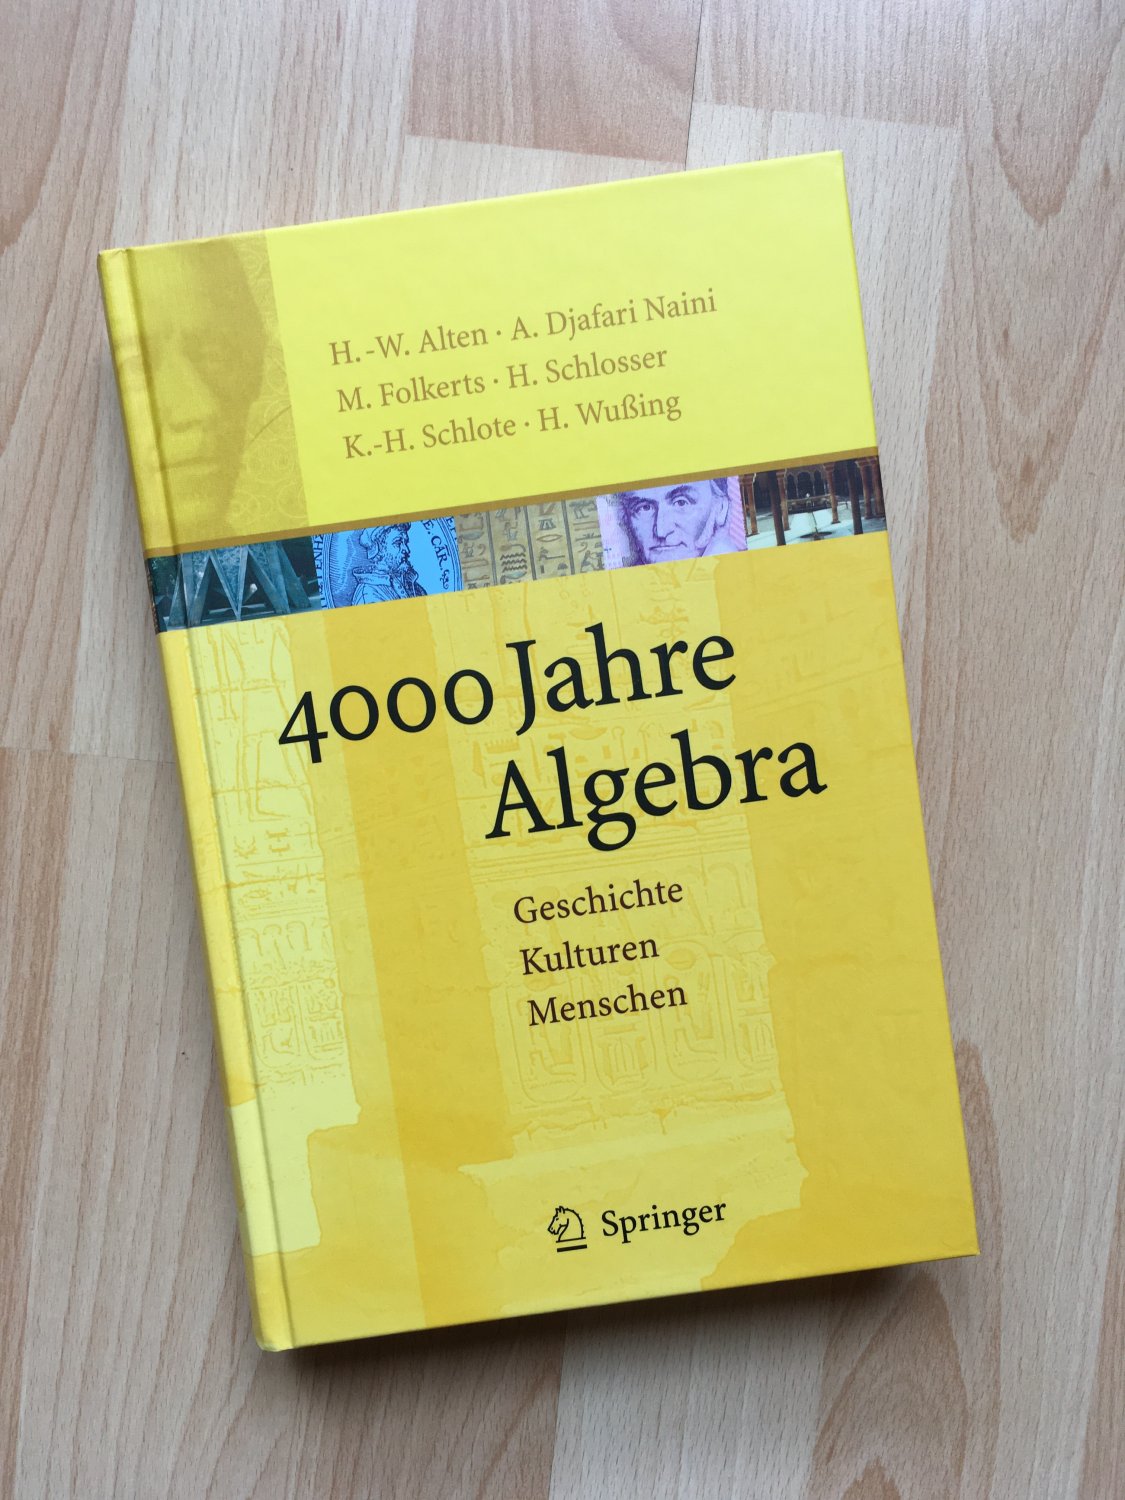 4000 Jahre Algebra Geschichte Alten Heinz Wilhelm Djafari Naini Buch Gebraucht Kaufen A02jqvka01zzv